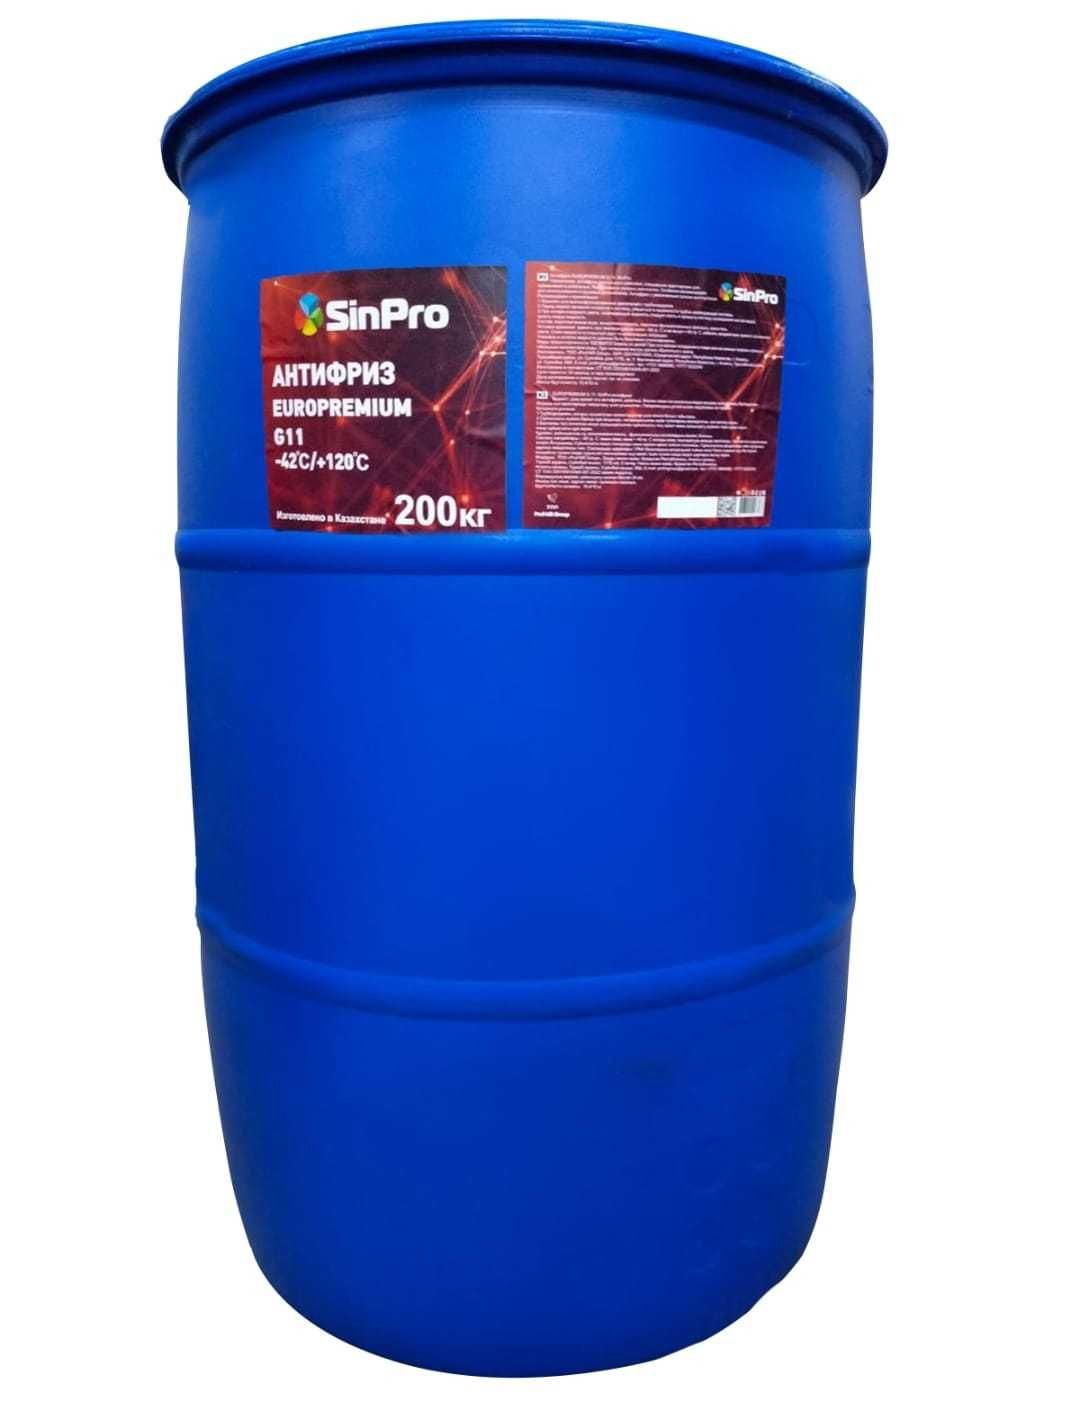 Антифриз SinPro красный 1, 5, 10, 200 кг (производство и реализация)